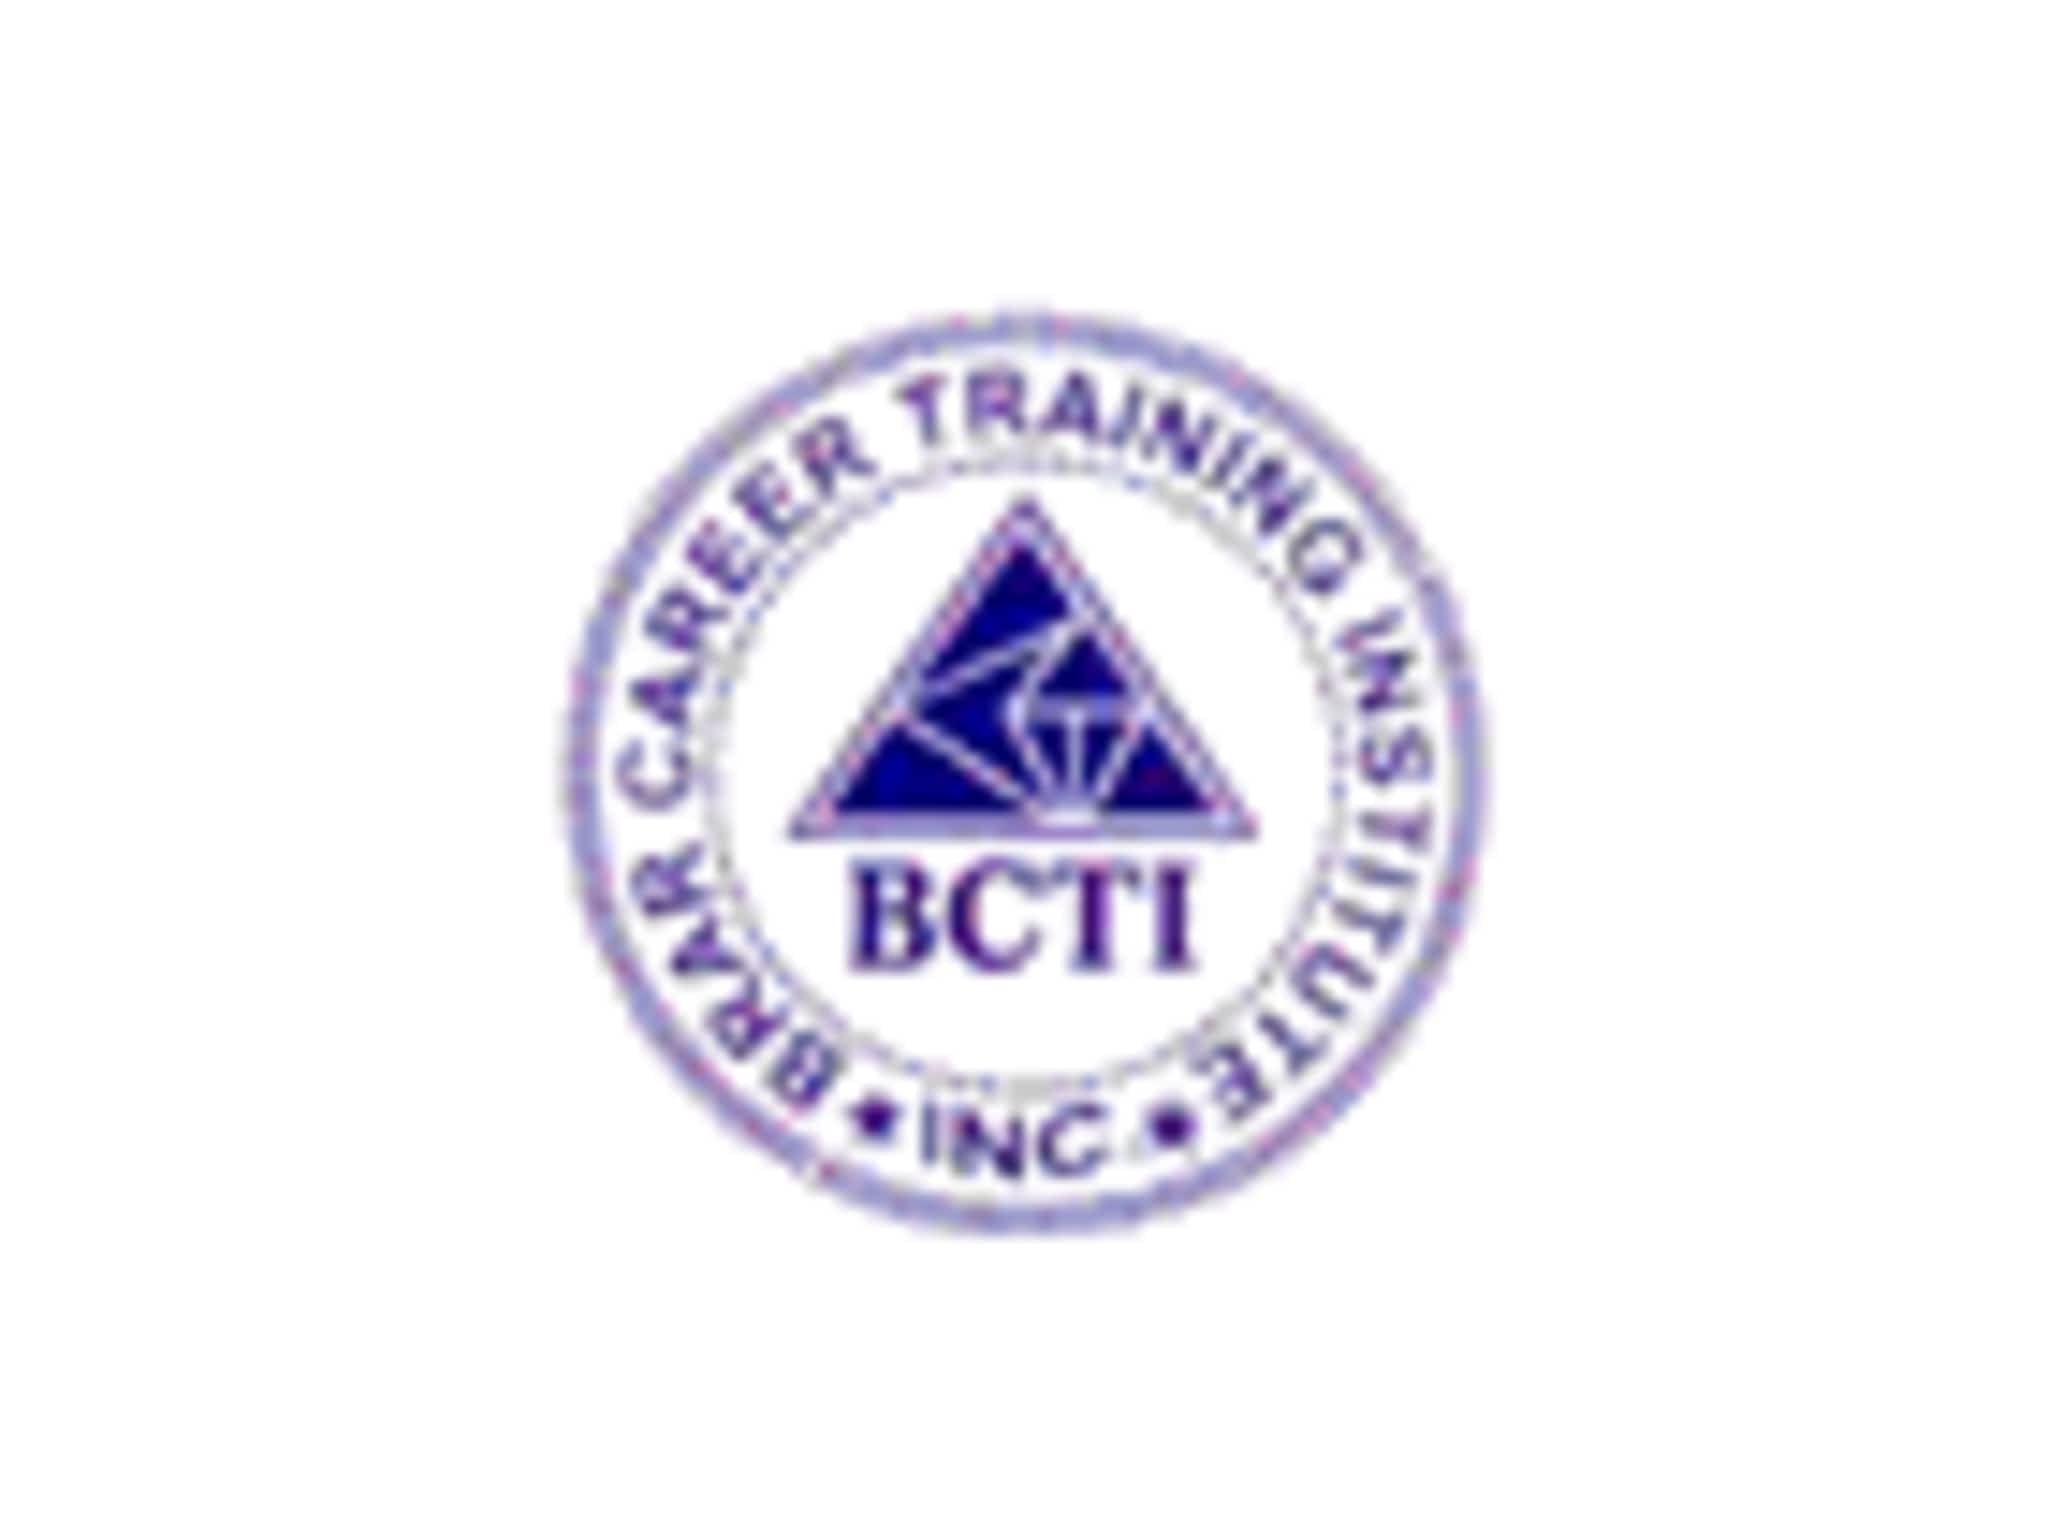 photo B C T I Brar Career Training Institute Inc